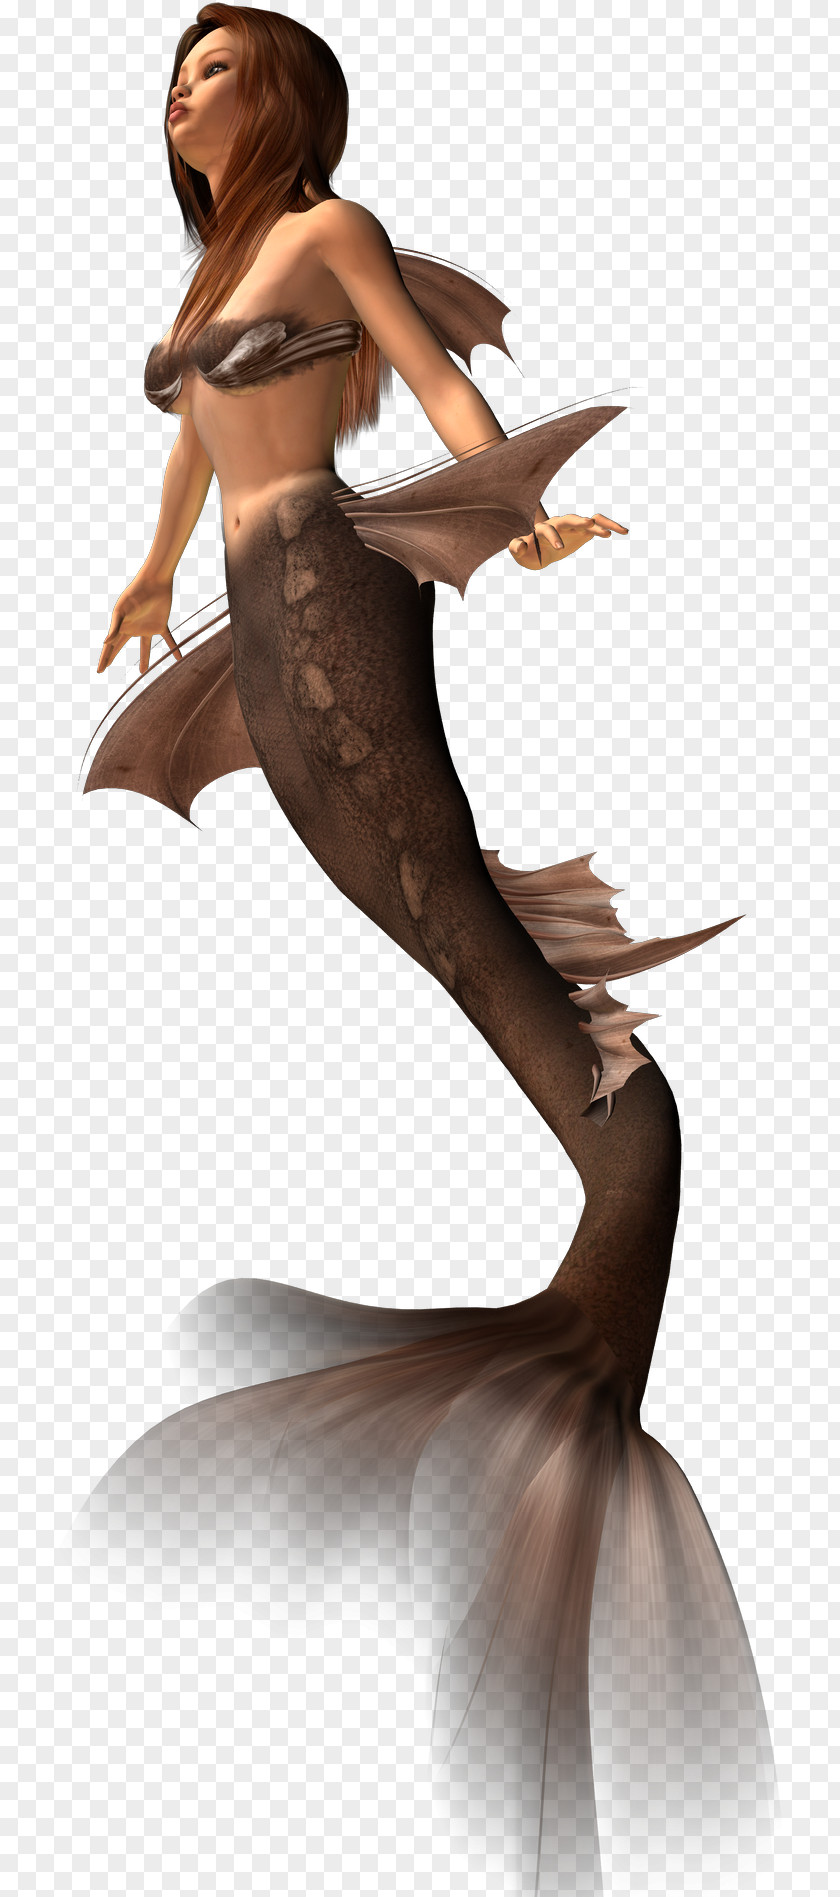 Mermaid The Little Rusalka PNG